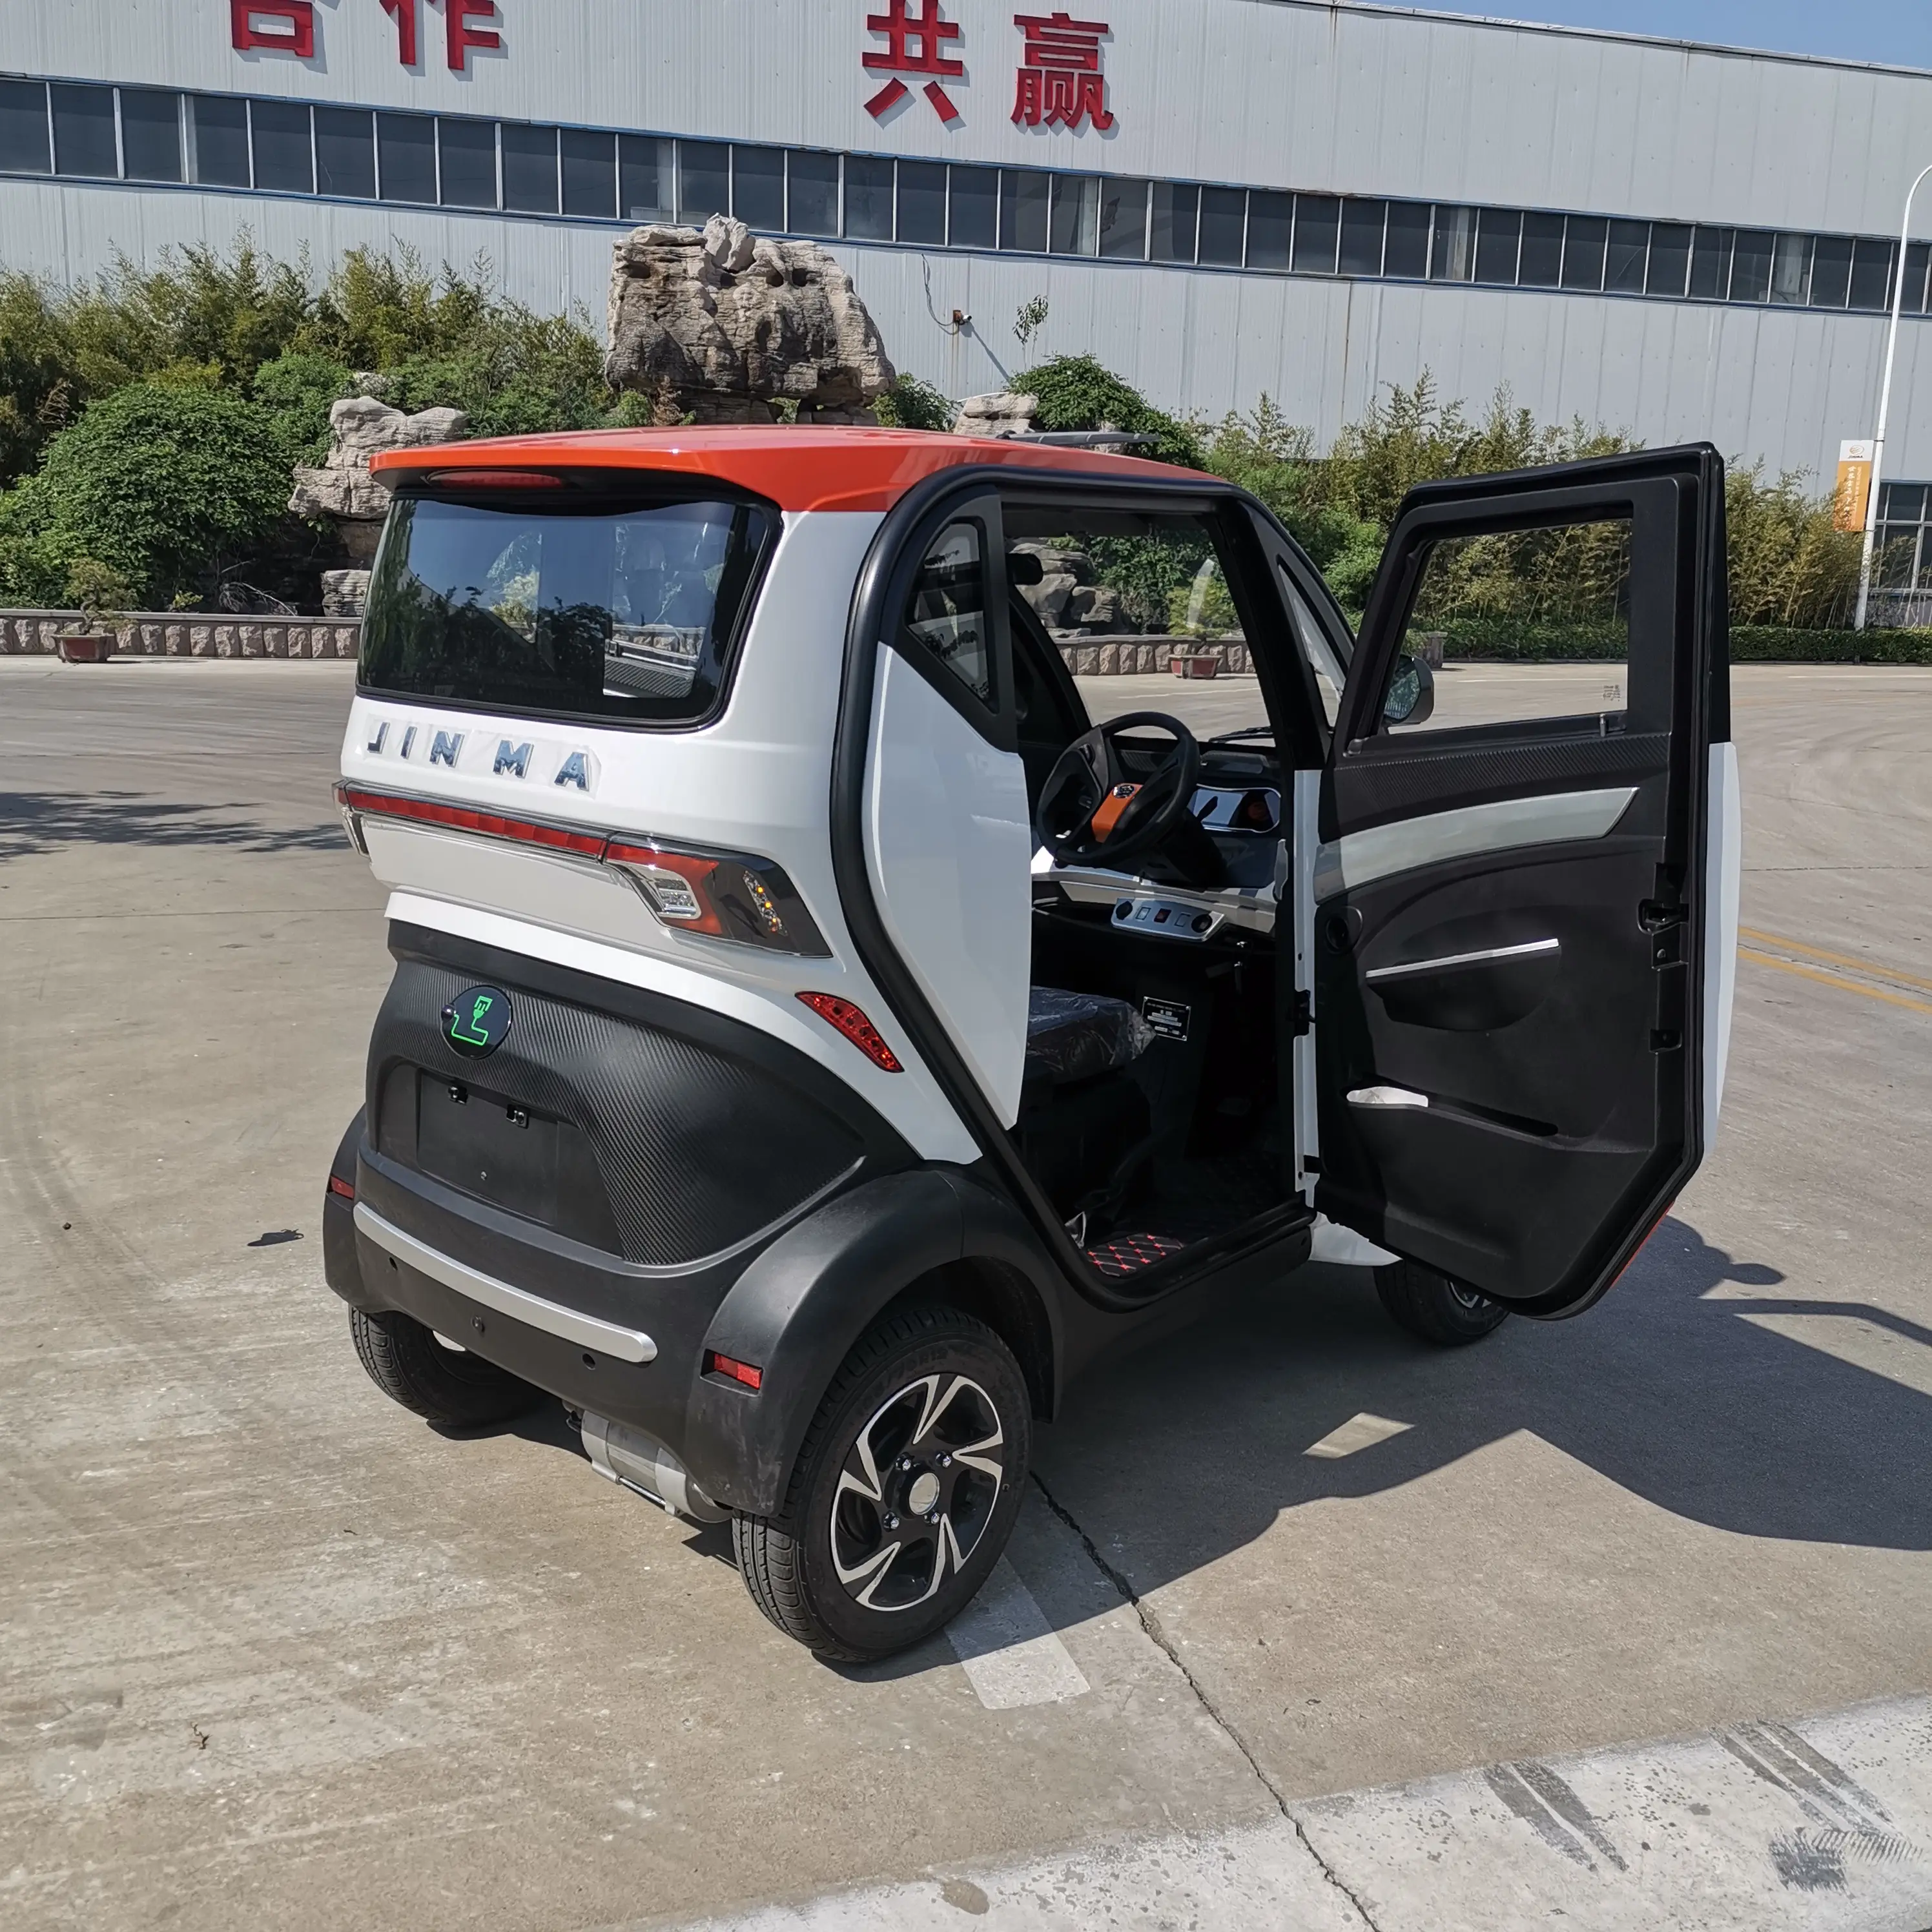 चीनी इलेक्ट्रिक वाहन मोटर कार मिनी गोल्फ इलेक्ट्रिक कारों के लिए यूरोप